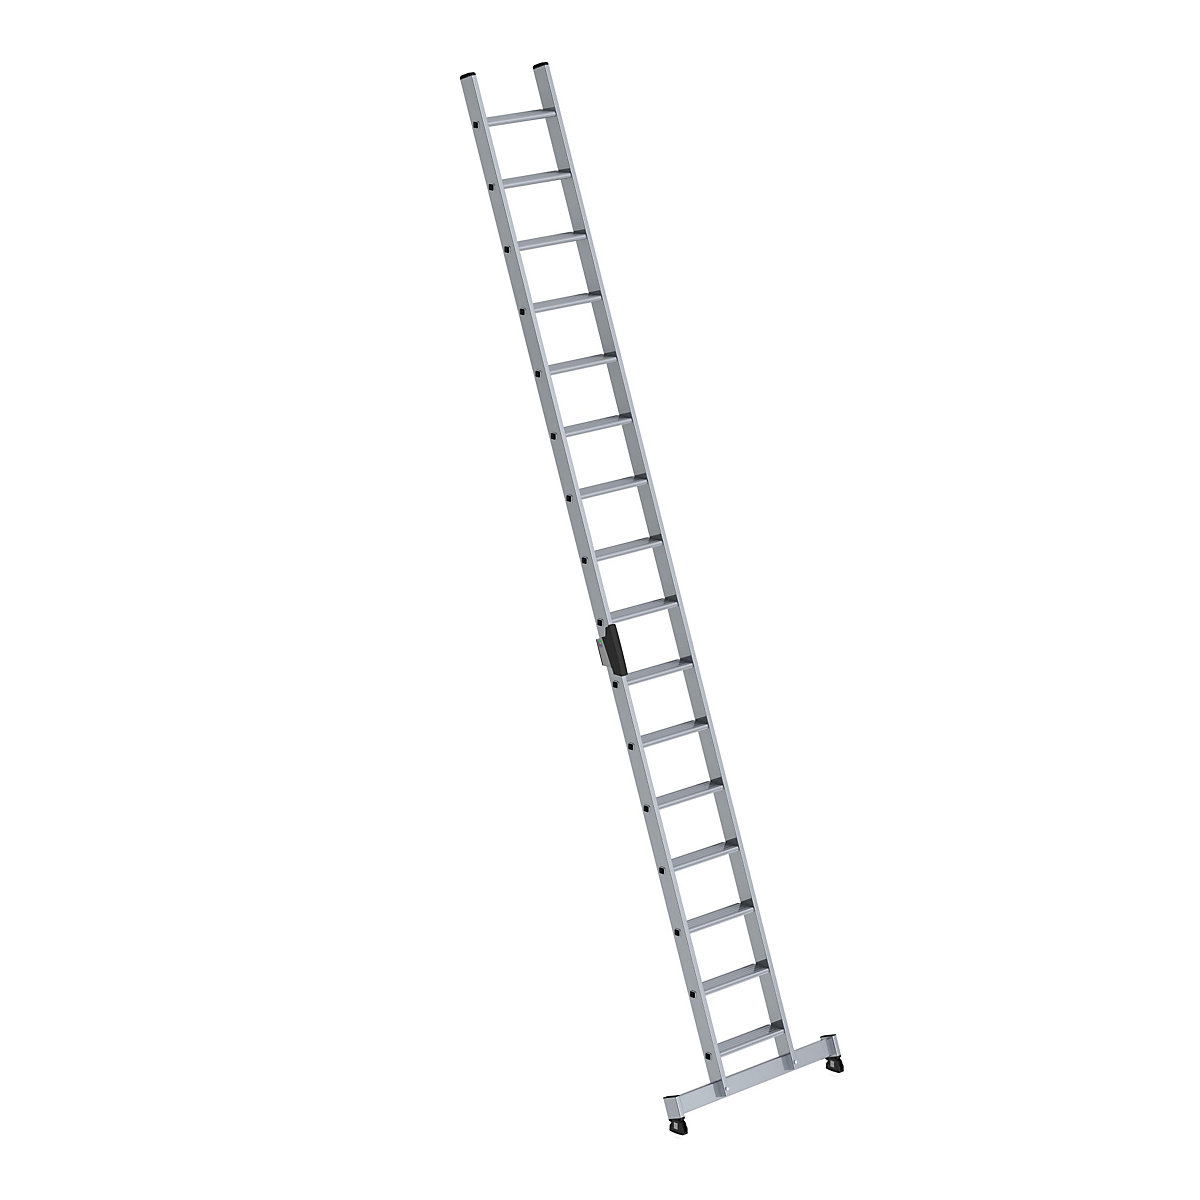 Anlegeleiter mit Stufen MUNK, Profiausführung, Breite 420 mm, 16 Stufen, mit nivello®-Traverse-7